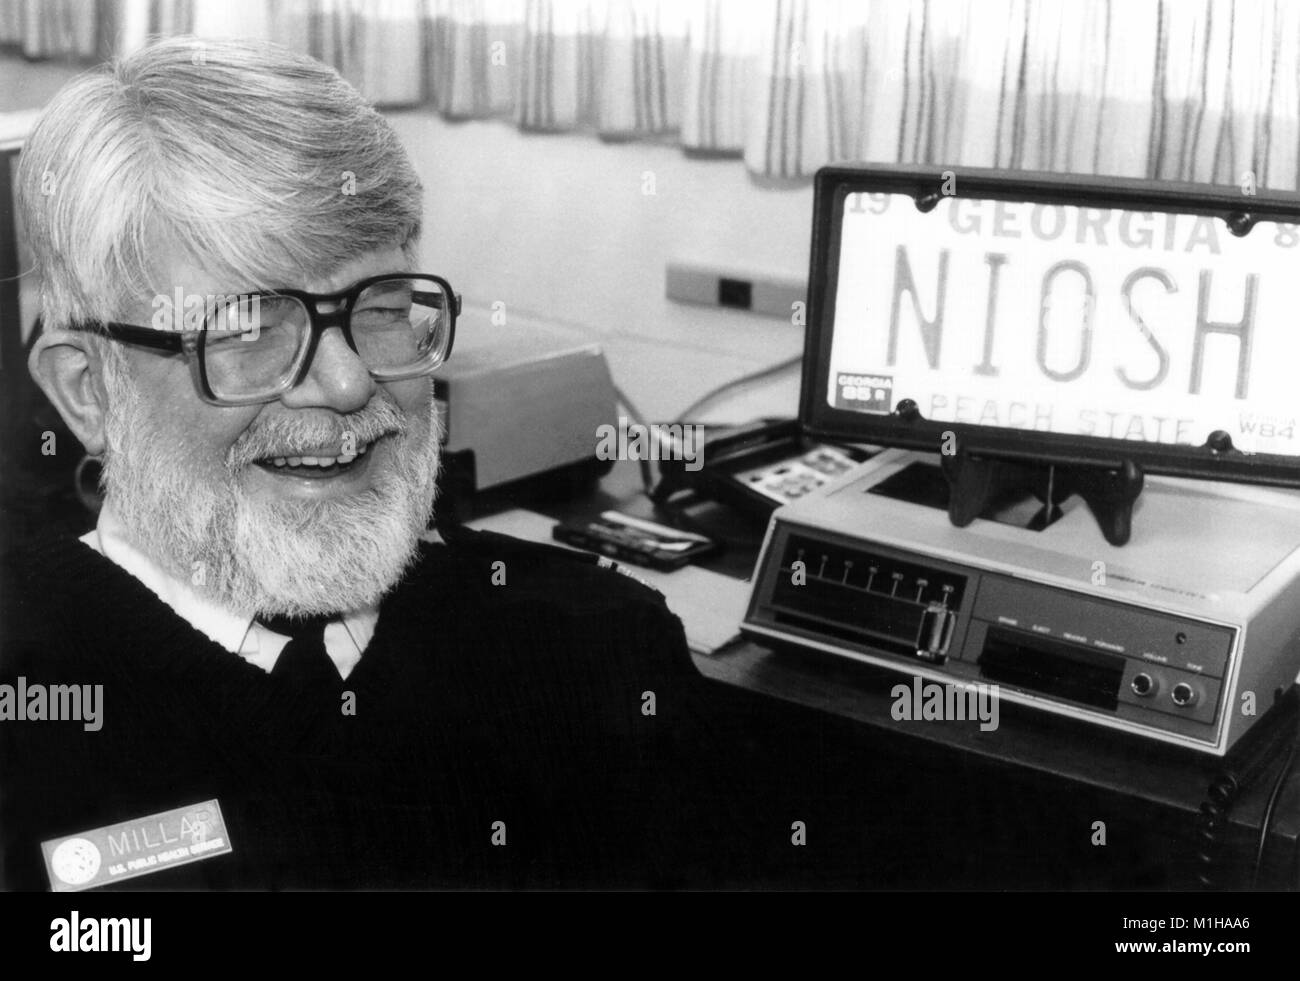 Headshot informale di J. Donald Millar, M.D. un epidemiologo e direttore dell'Istituto nazionale della salute e della sicurezza sul lavoro, ridendo accanto a un NIOSH targa, 1985. Immagine cortesia CDC. () Foto Stock